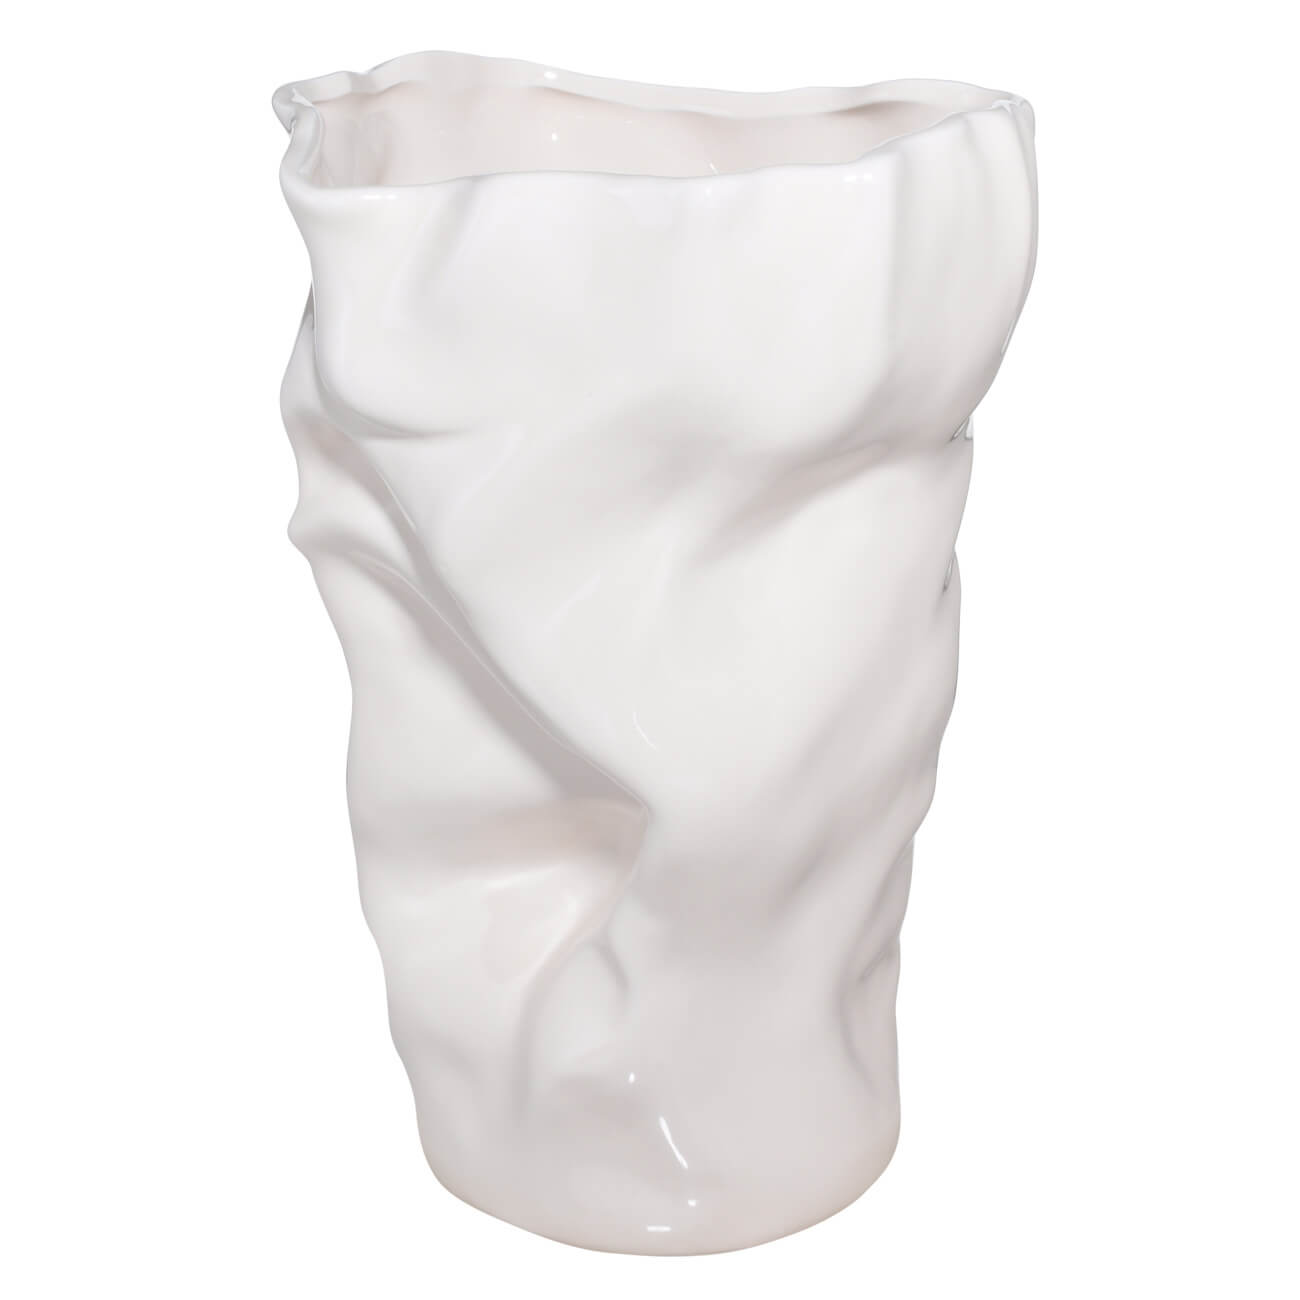 Ваза для цветов, 27 см, керамика, молочная, Мятый эффект, Crumple ваза для ов 24 см керамика молочная мятый эффект crumple